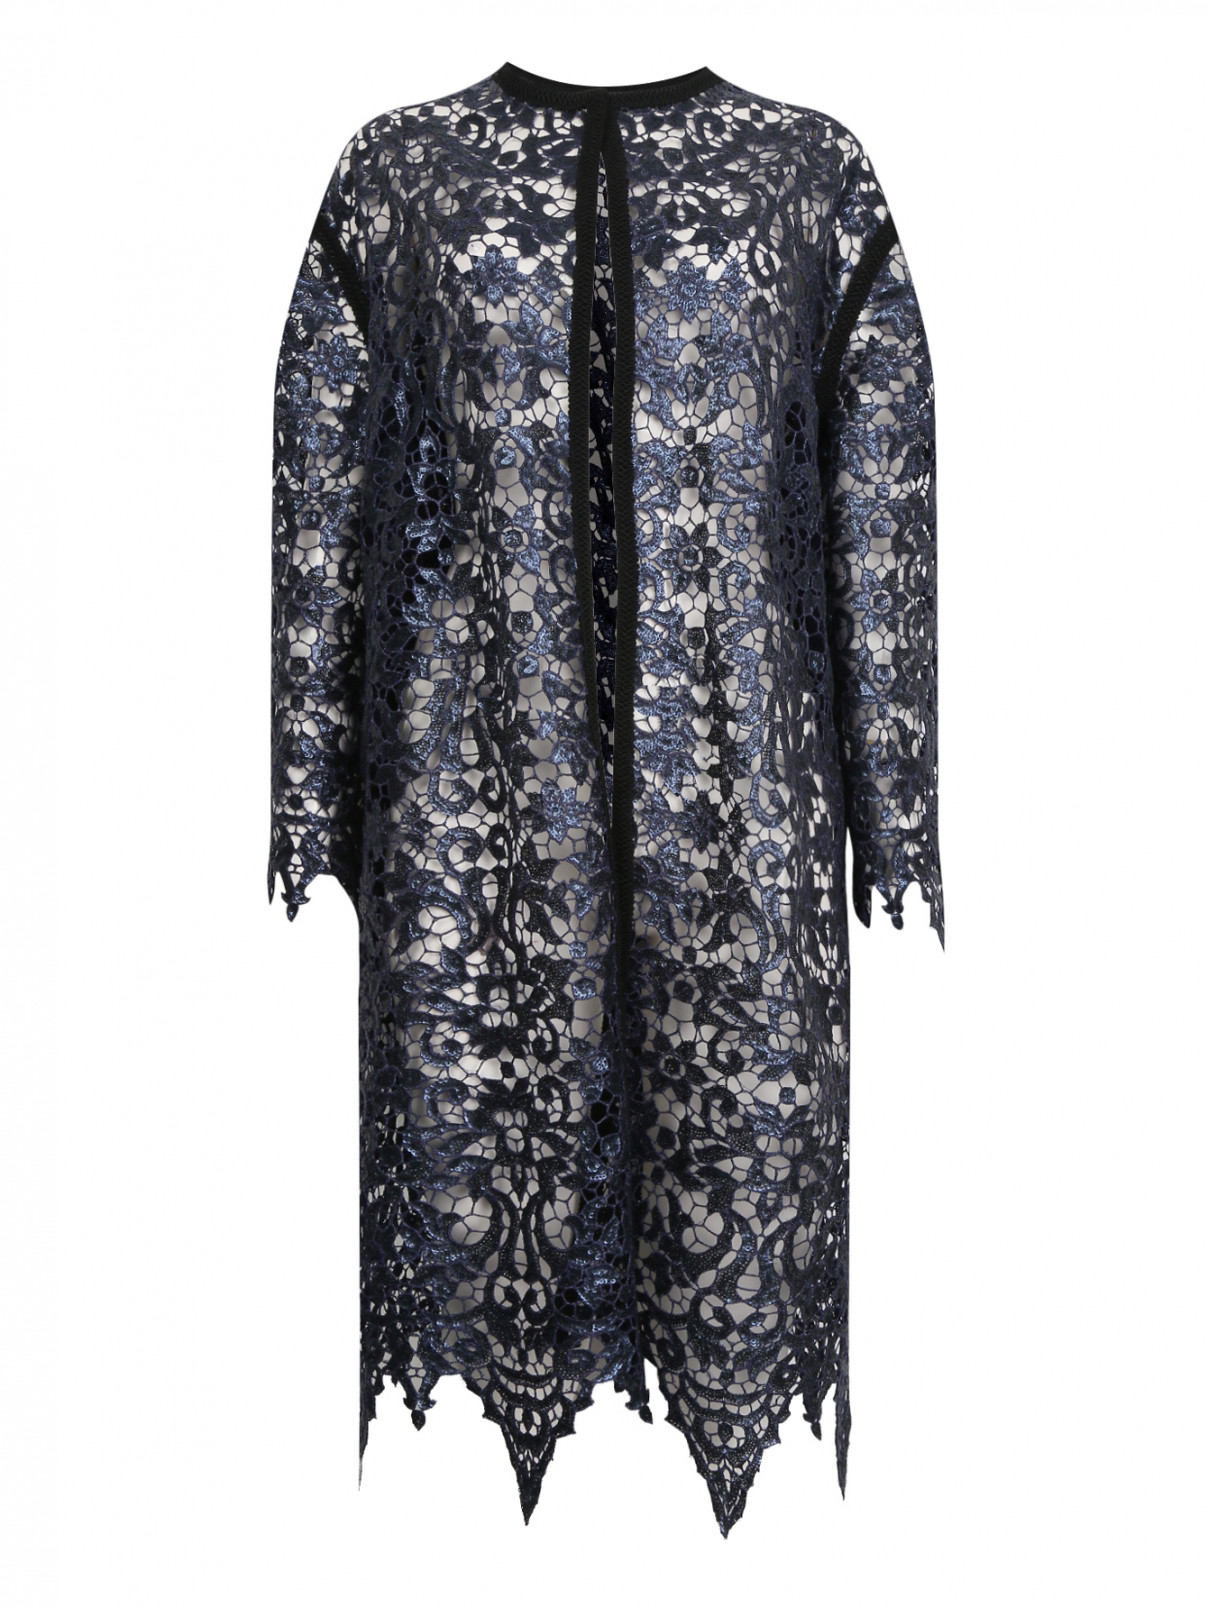 Пальто из кружева с пайетками Antonio Marras  –  Общий вид  – Цвет:  Синий